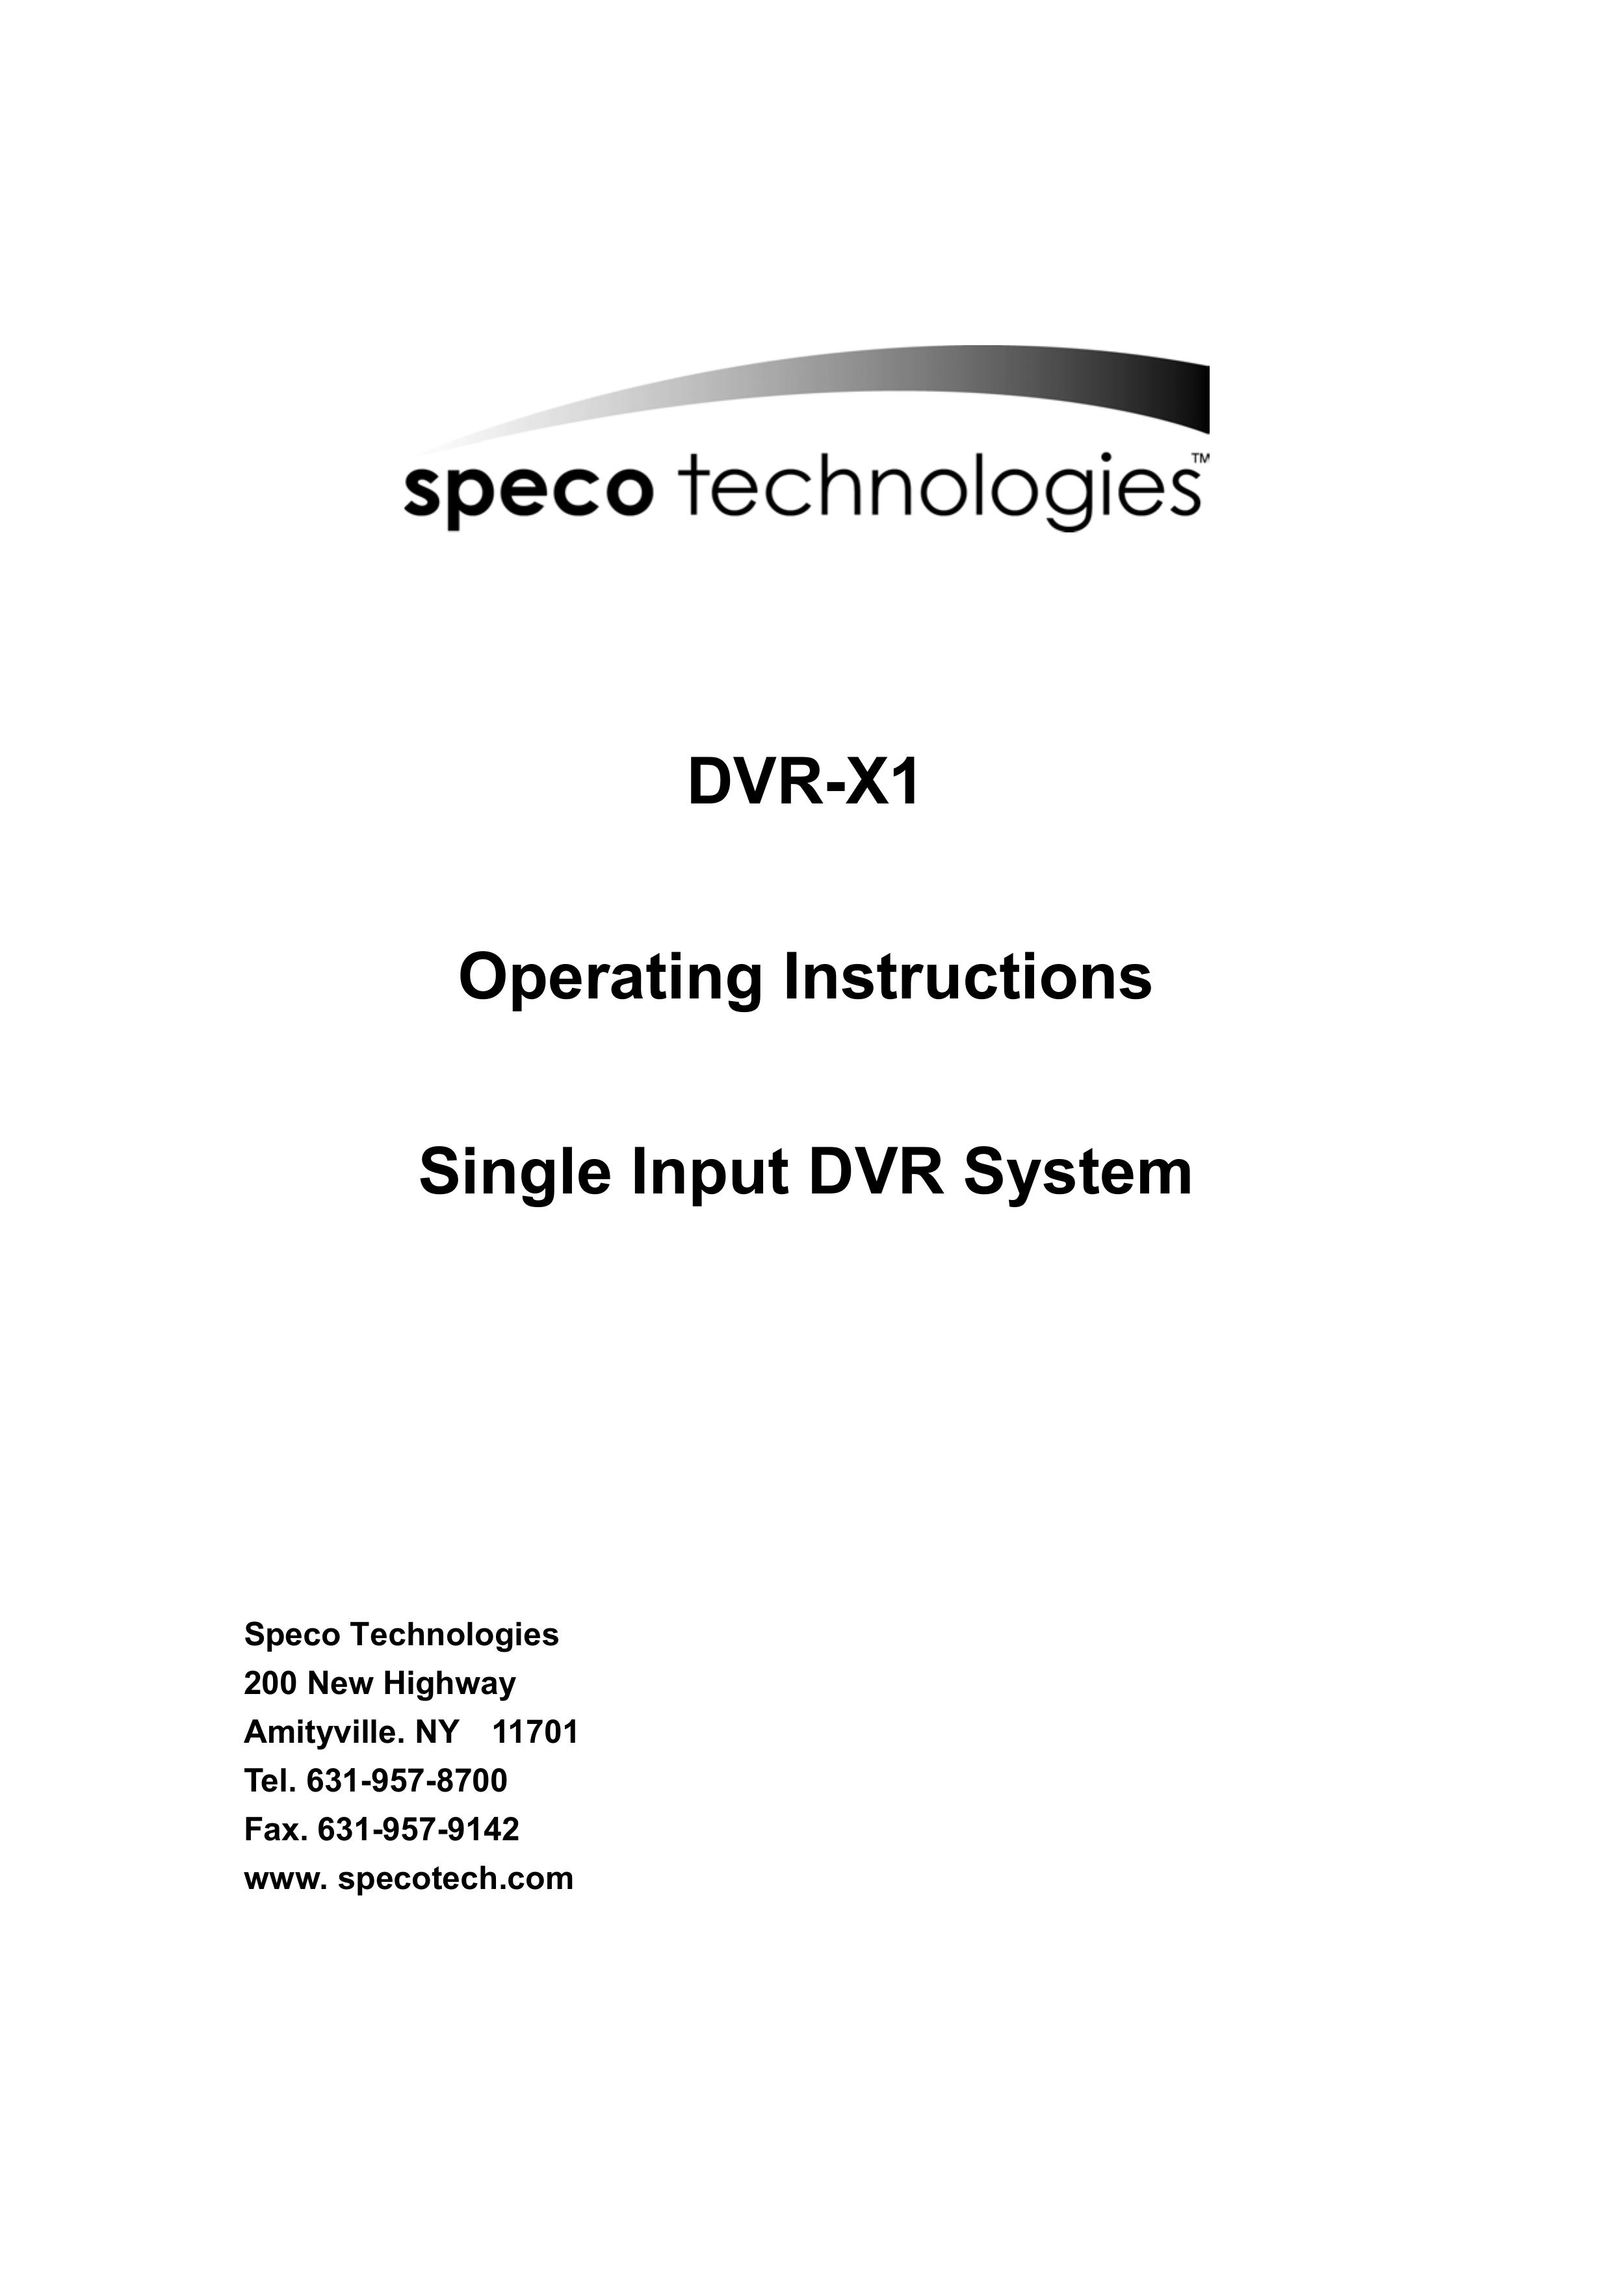 Speco Technologies DVR-X1 DVR User Manual